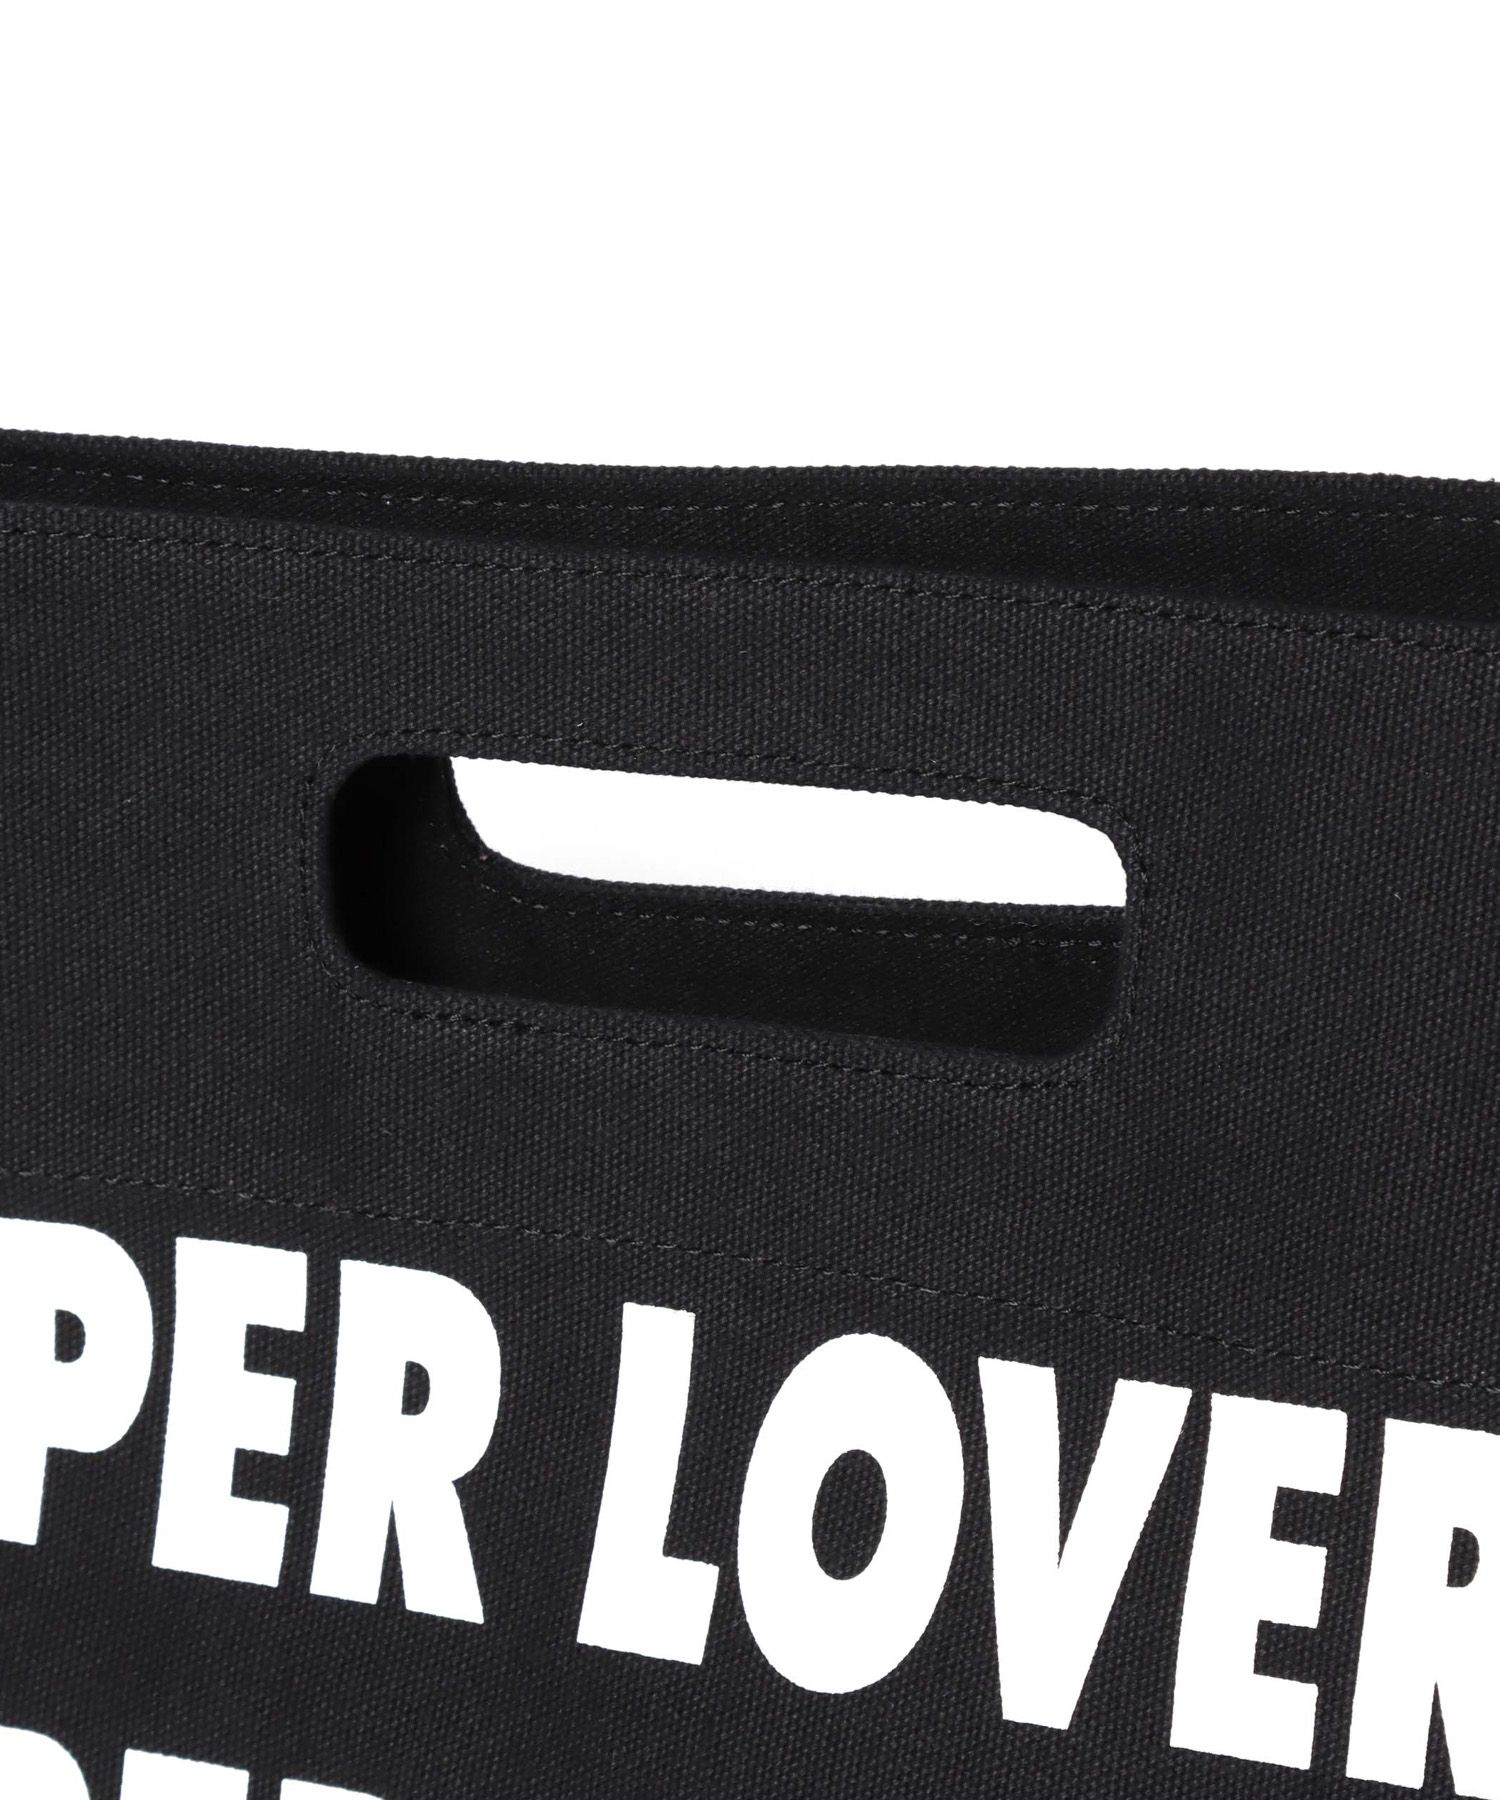 SUPER LOVERS（スーパーラヴァーズ）】コラボクリテ2WAYトートバッグ